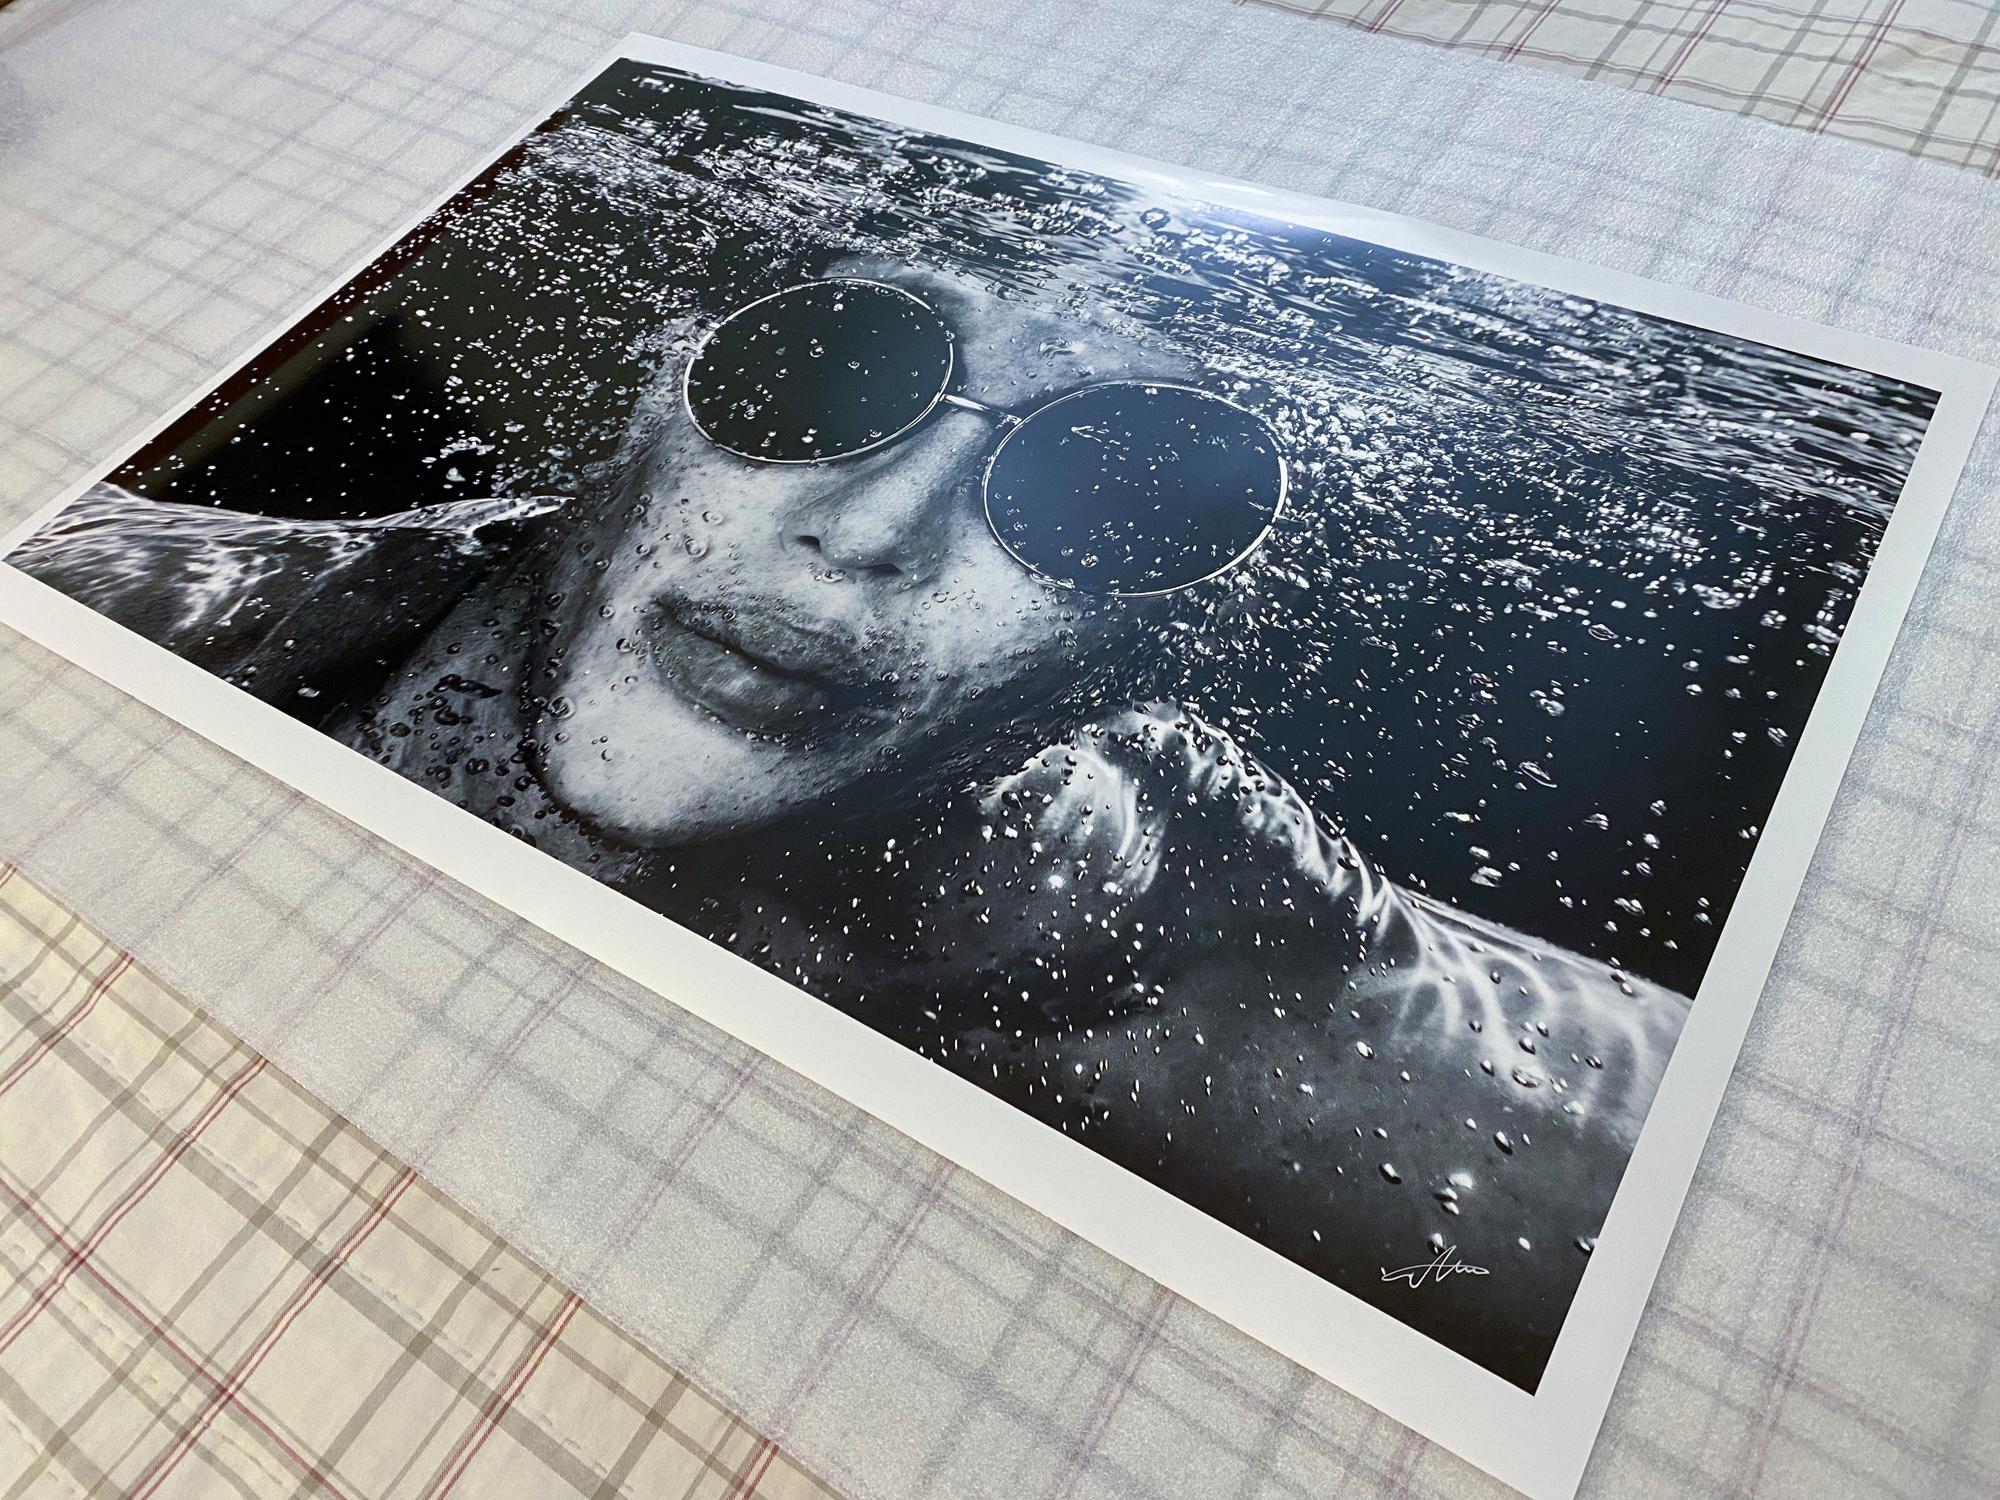 Ein Unterwasser-Schwarz-Weiß-Porträt von Justin Jedlica - The Human Ken Doll

Originaldruck in Galeriequalität auf Archivpapier, vom Künstler signiert.
Limitierte Auflage von 24 Stück, Druck Nr. 3
Das Kunstwerk ist mit einem Echtheitszertifikat